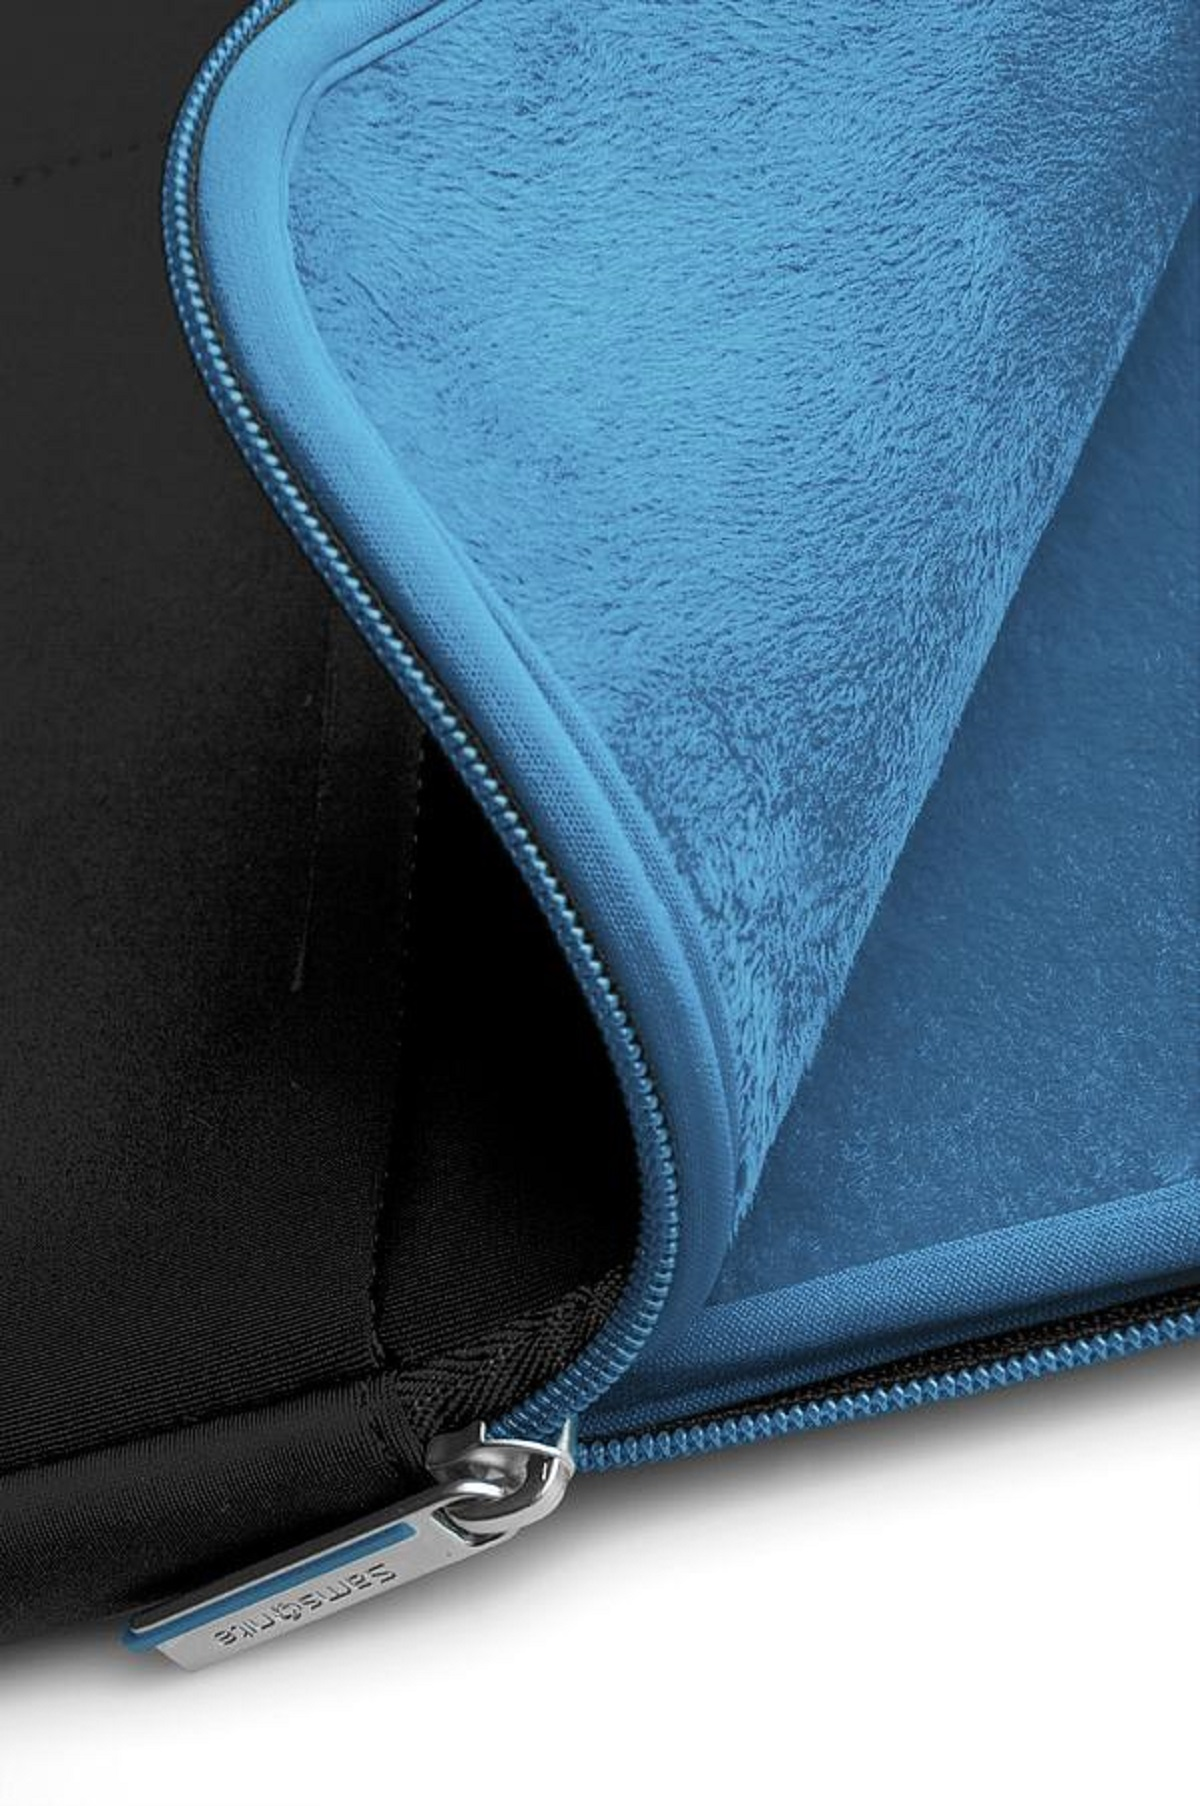 SAMSONITE Airglow Notebookhülle Sling-Tasche Neoprene, Schwarz/Blau Universal für